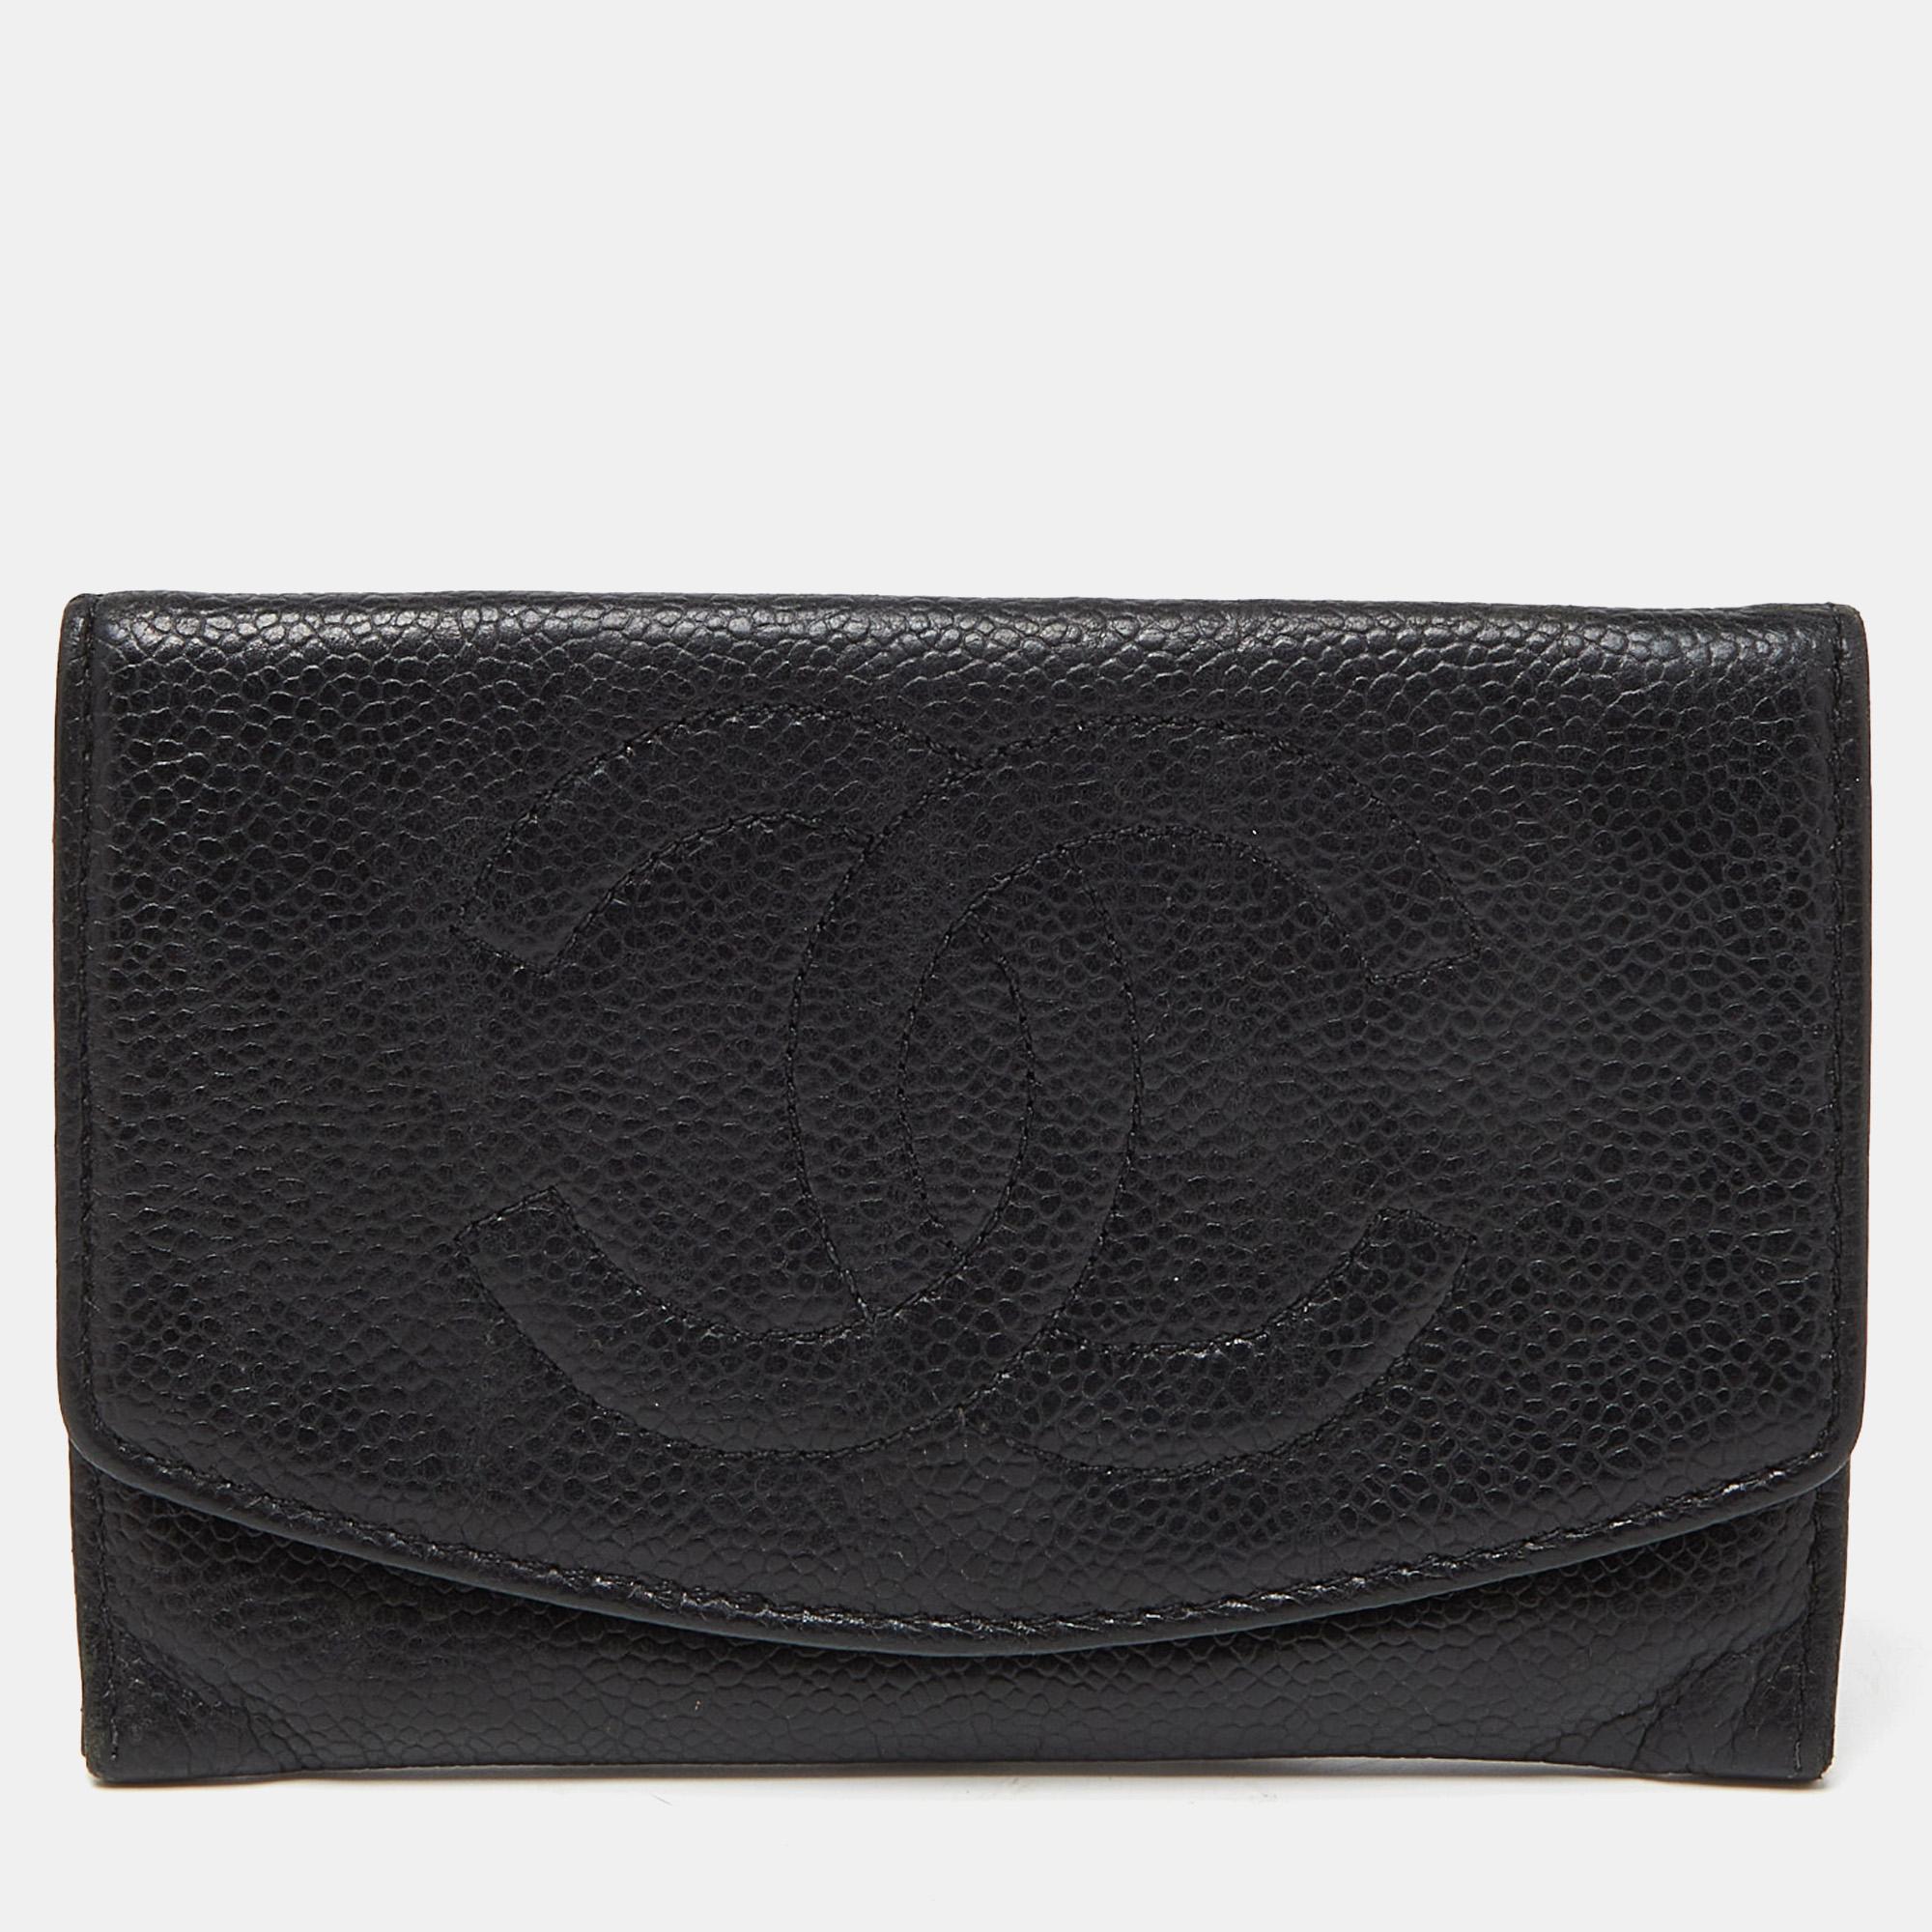 Ce portefeuille Chanel CC est un équilibre parfait entre sophistication et utilité rationnelle. Il a été conçu à partir de matériaux de première qualité et rehaussé par une finition élégante. La création est équipée d'un grand espace pour vos